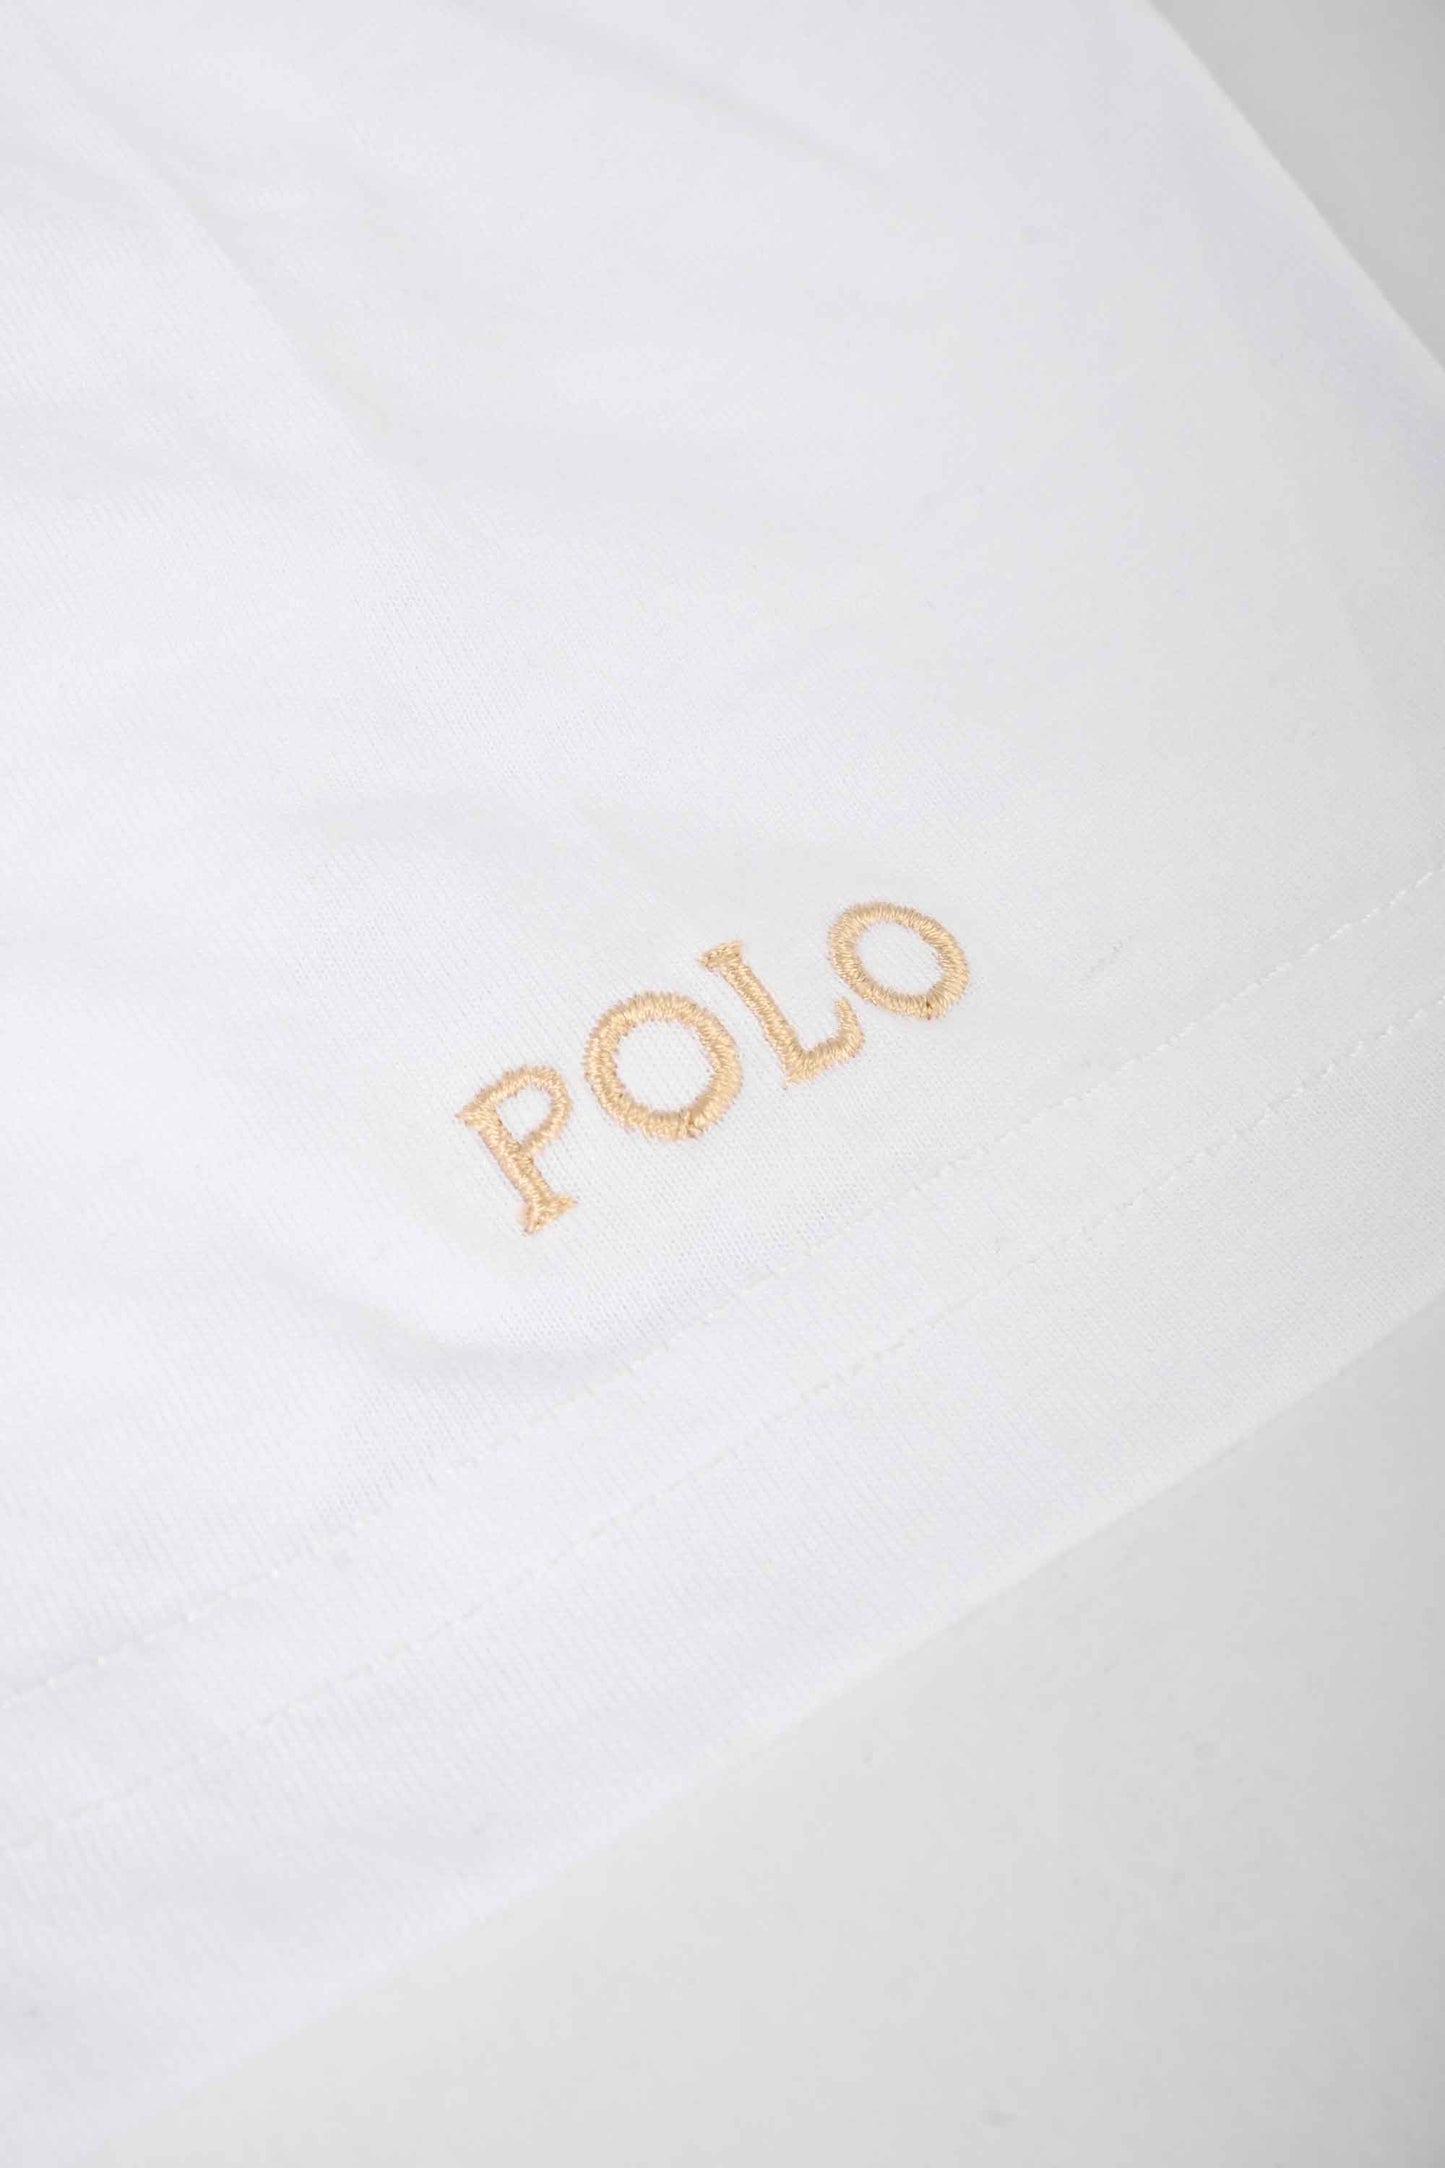 Polo Republica Men's PRC Crest & 8 Embroidered Crew Neck Tee Shirt Men's Tee Shirt Polo Republica 